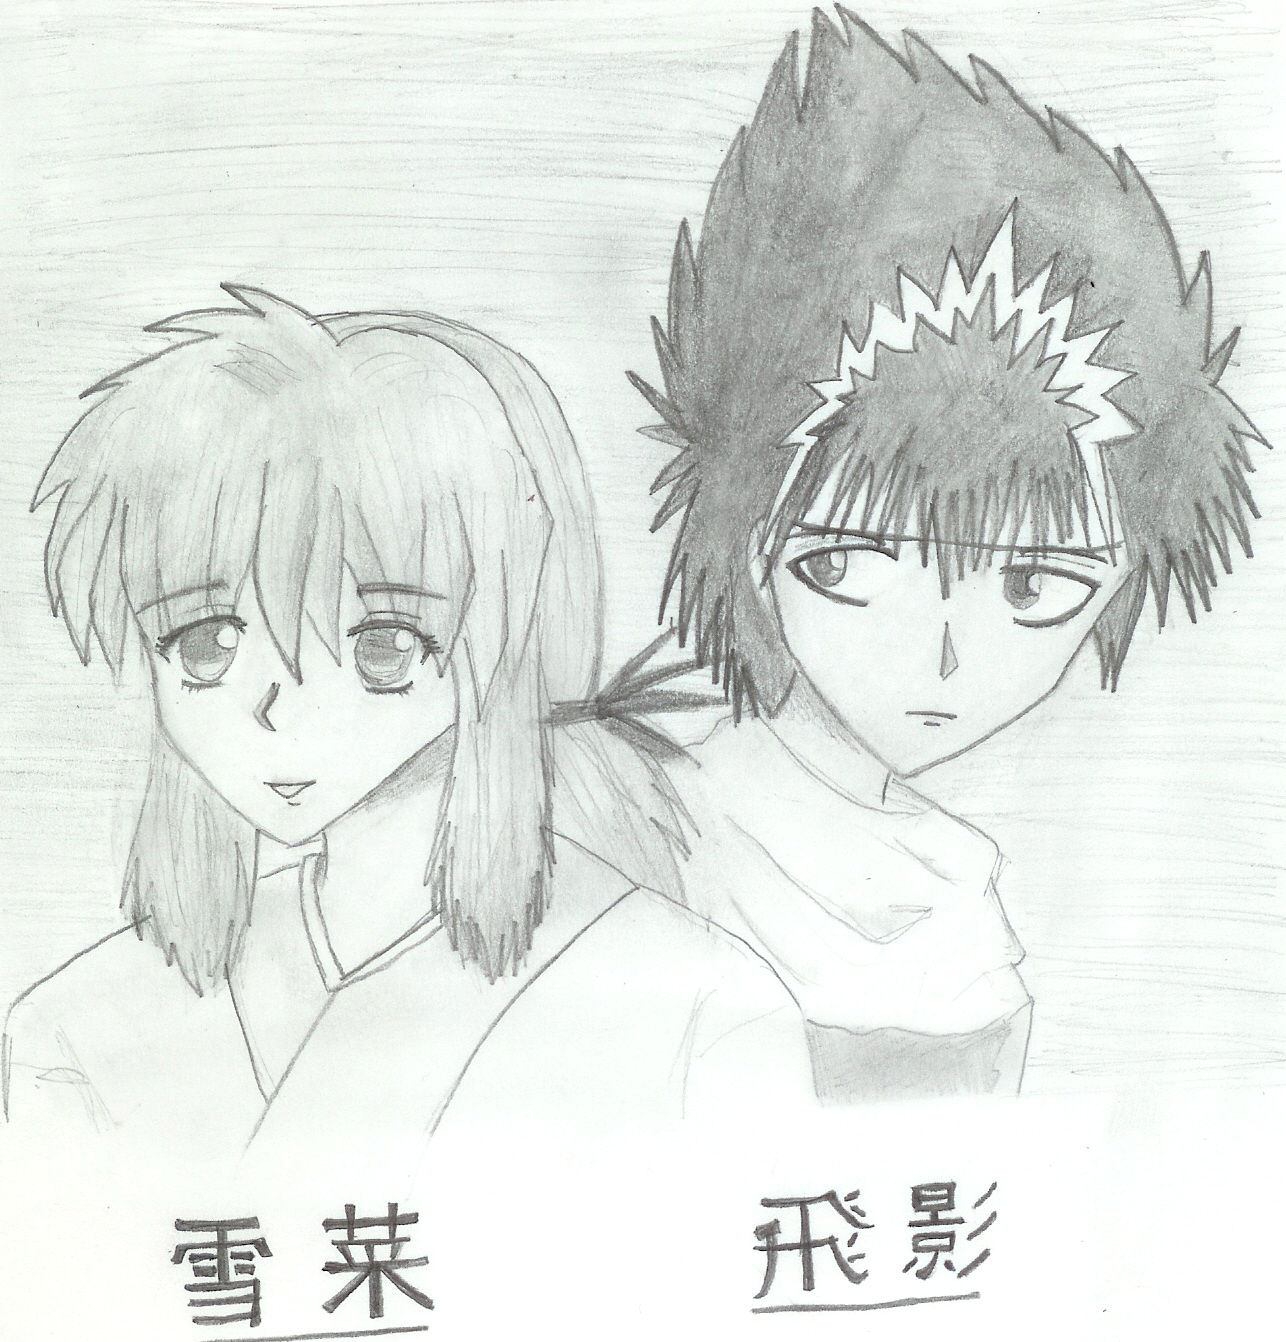 Hiei and Yukina by KendoruSama